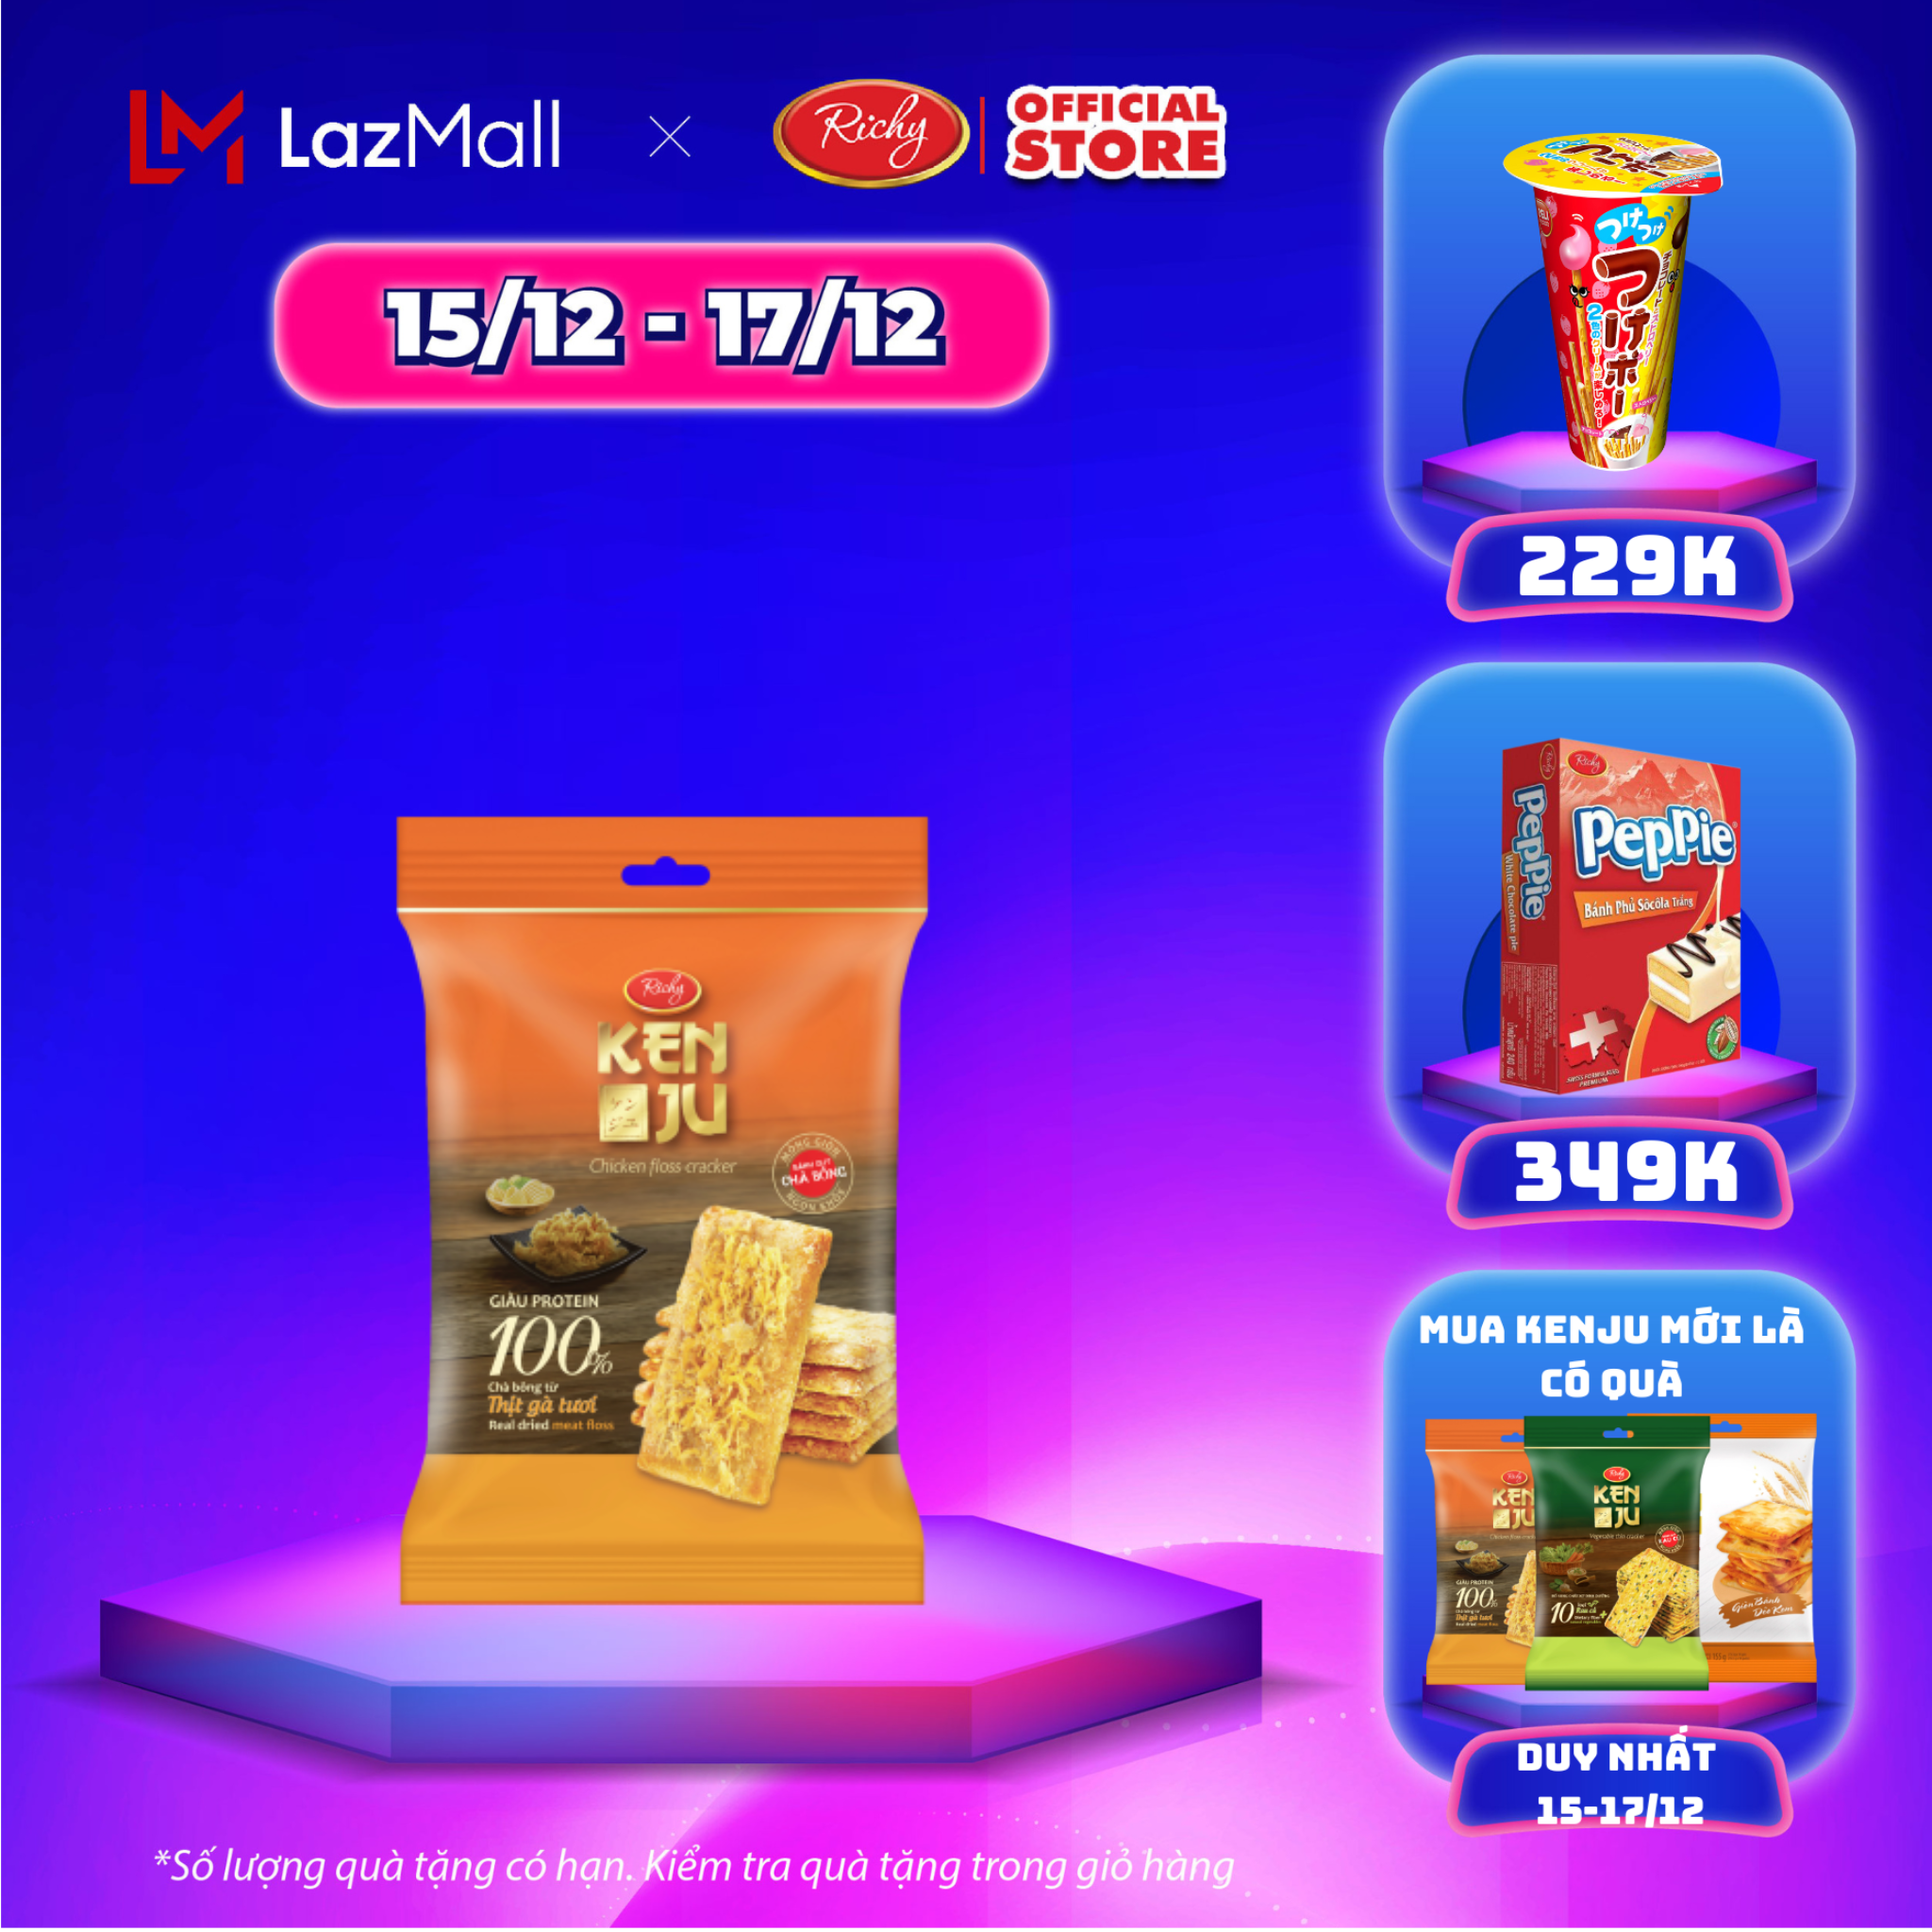 SALE GIỮA THÁNG 15-17 12 ĐỘC QUYỀN ONLINE Túi Bánh Kenju chà bông túi 192g